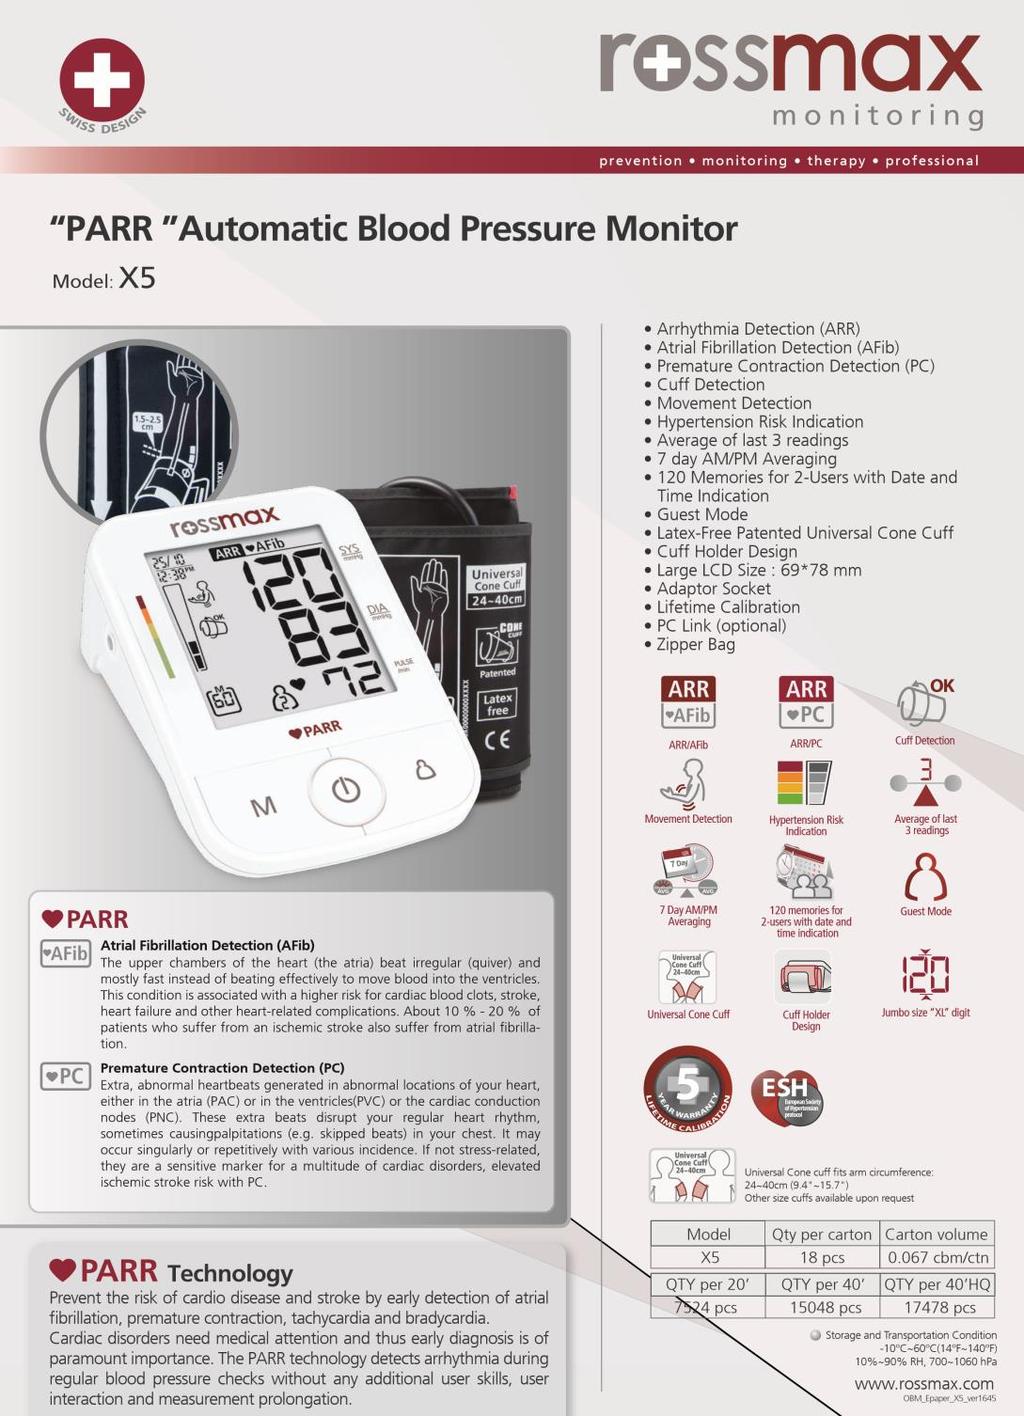 4 ПРОДУКТИ НА ROSSMAX Автоматичен апарат за кръвно налягане X5 Отчитане на аритмия (ARR) Отчитане на предсърдно мъждене (AFib) Отчитане на